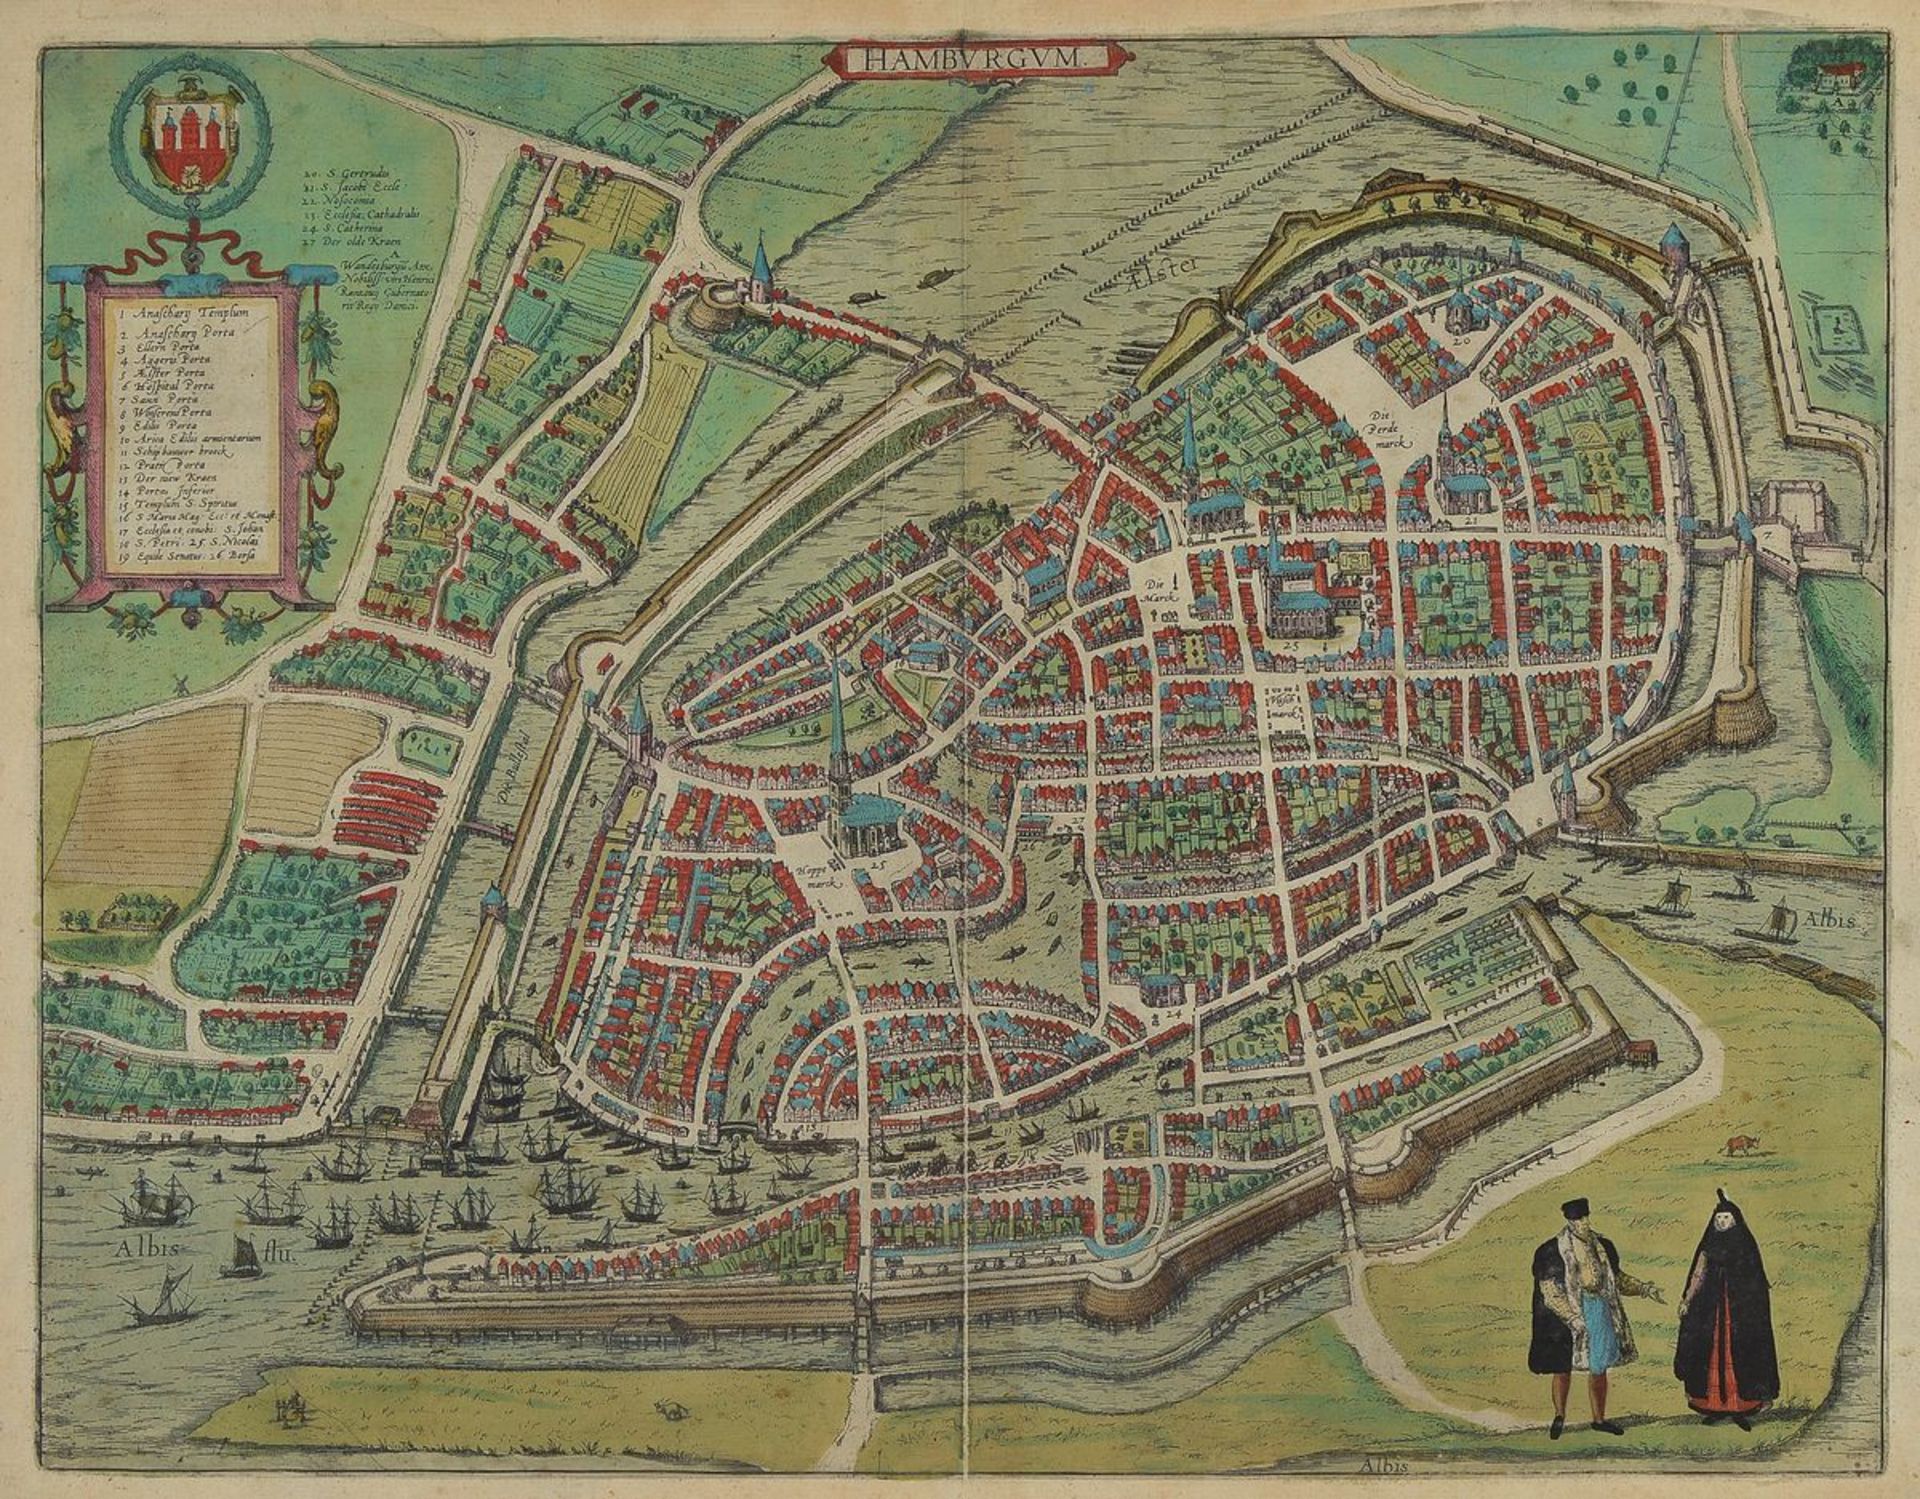 Kupferstich, Hamburg, um 1600, "Hamburgum" aus "Civitates Orbis Terrarum" v. Braun/Hogenberg von